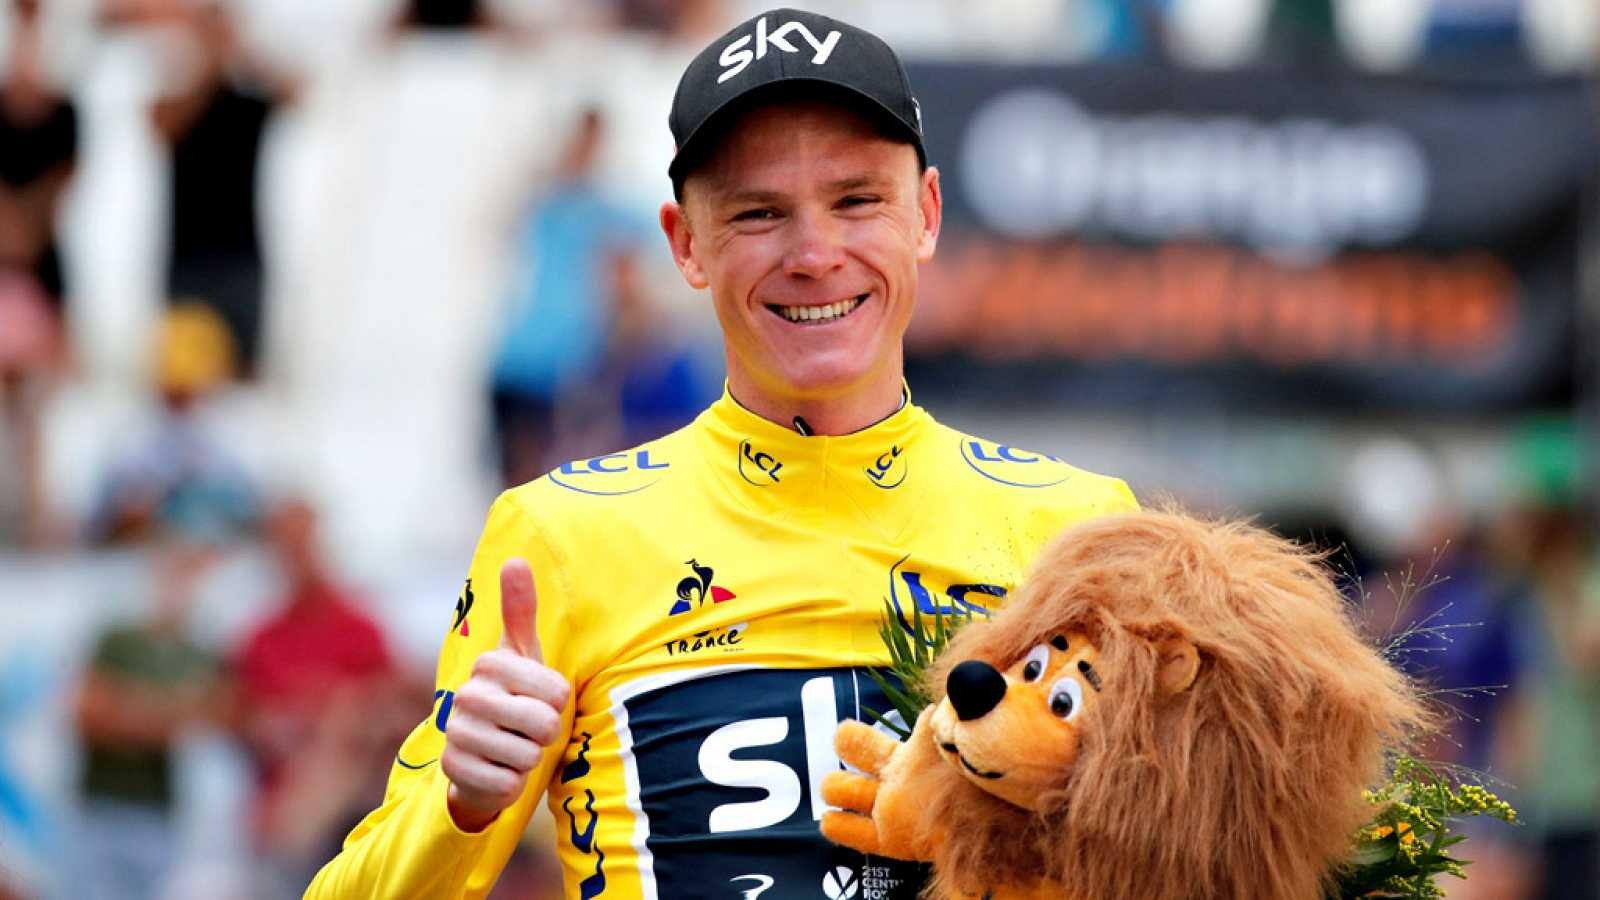 Por Que Se Regala Un Leon A Los Ganadores En El Tour De Francia